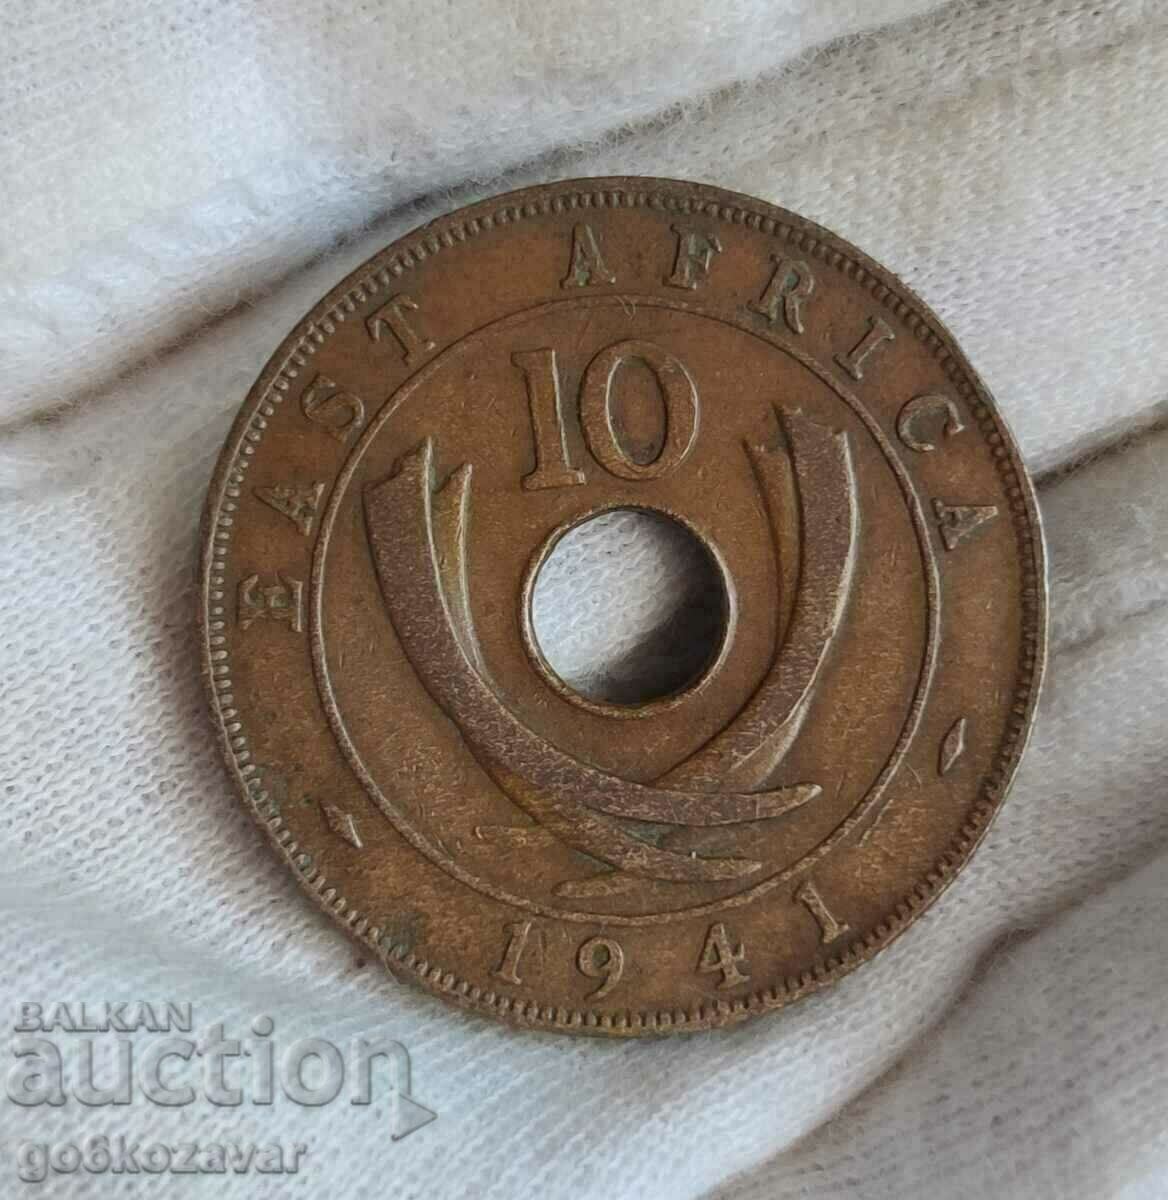 Βρετανική Ανατολική Αφρική 10 σεντς 1941